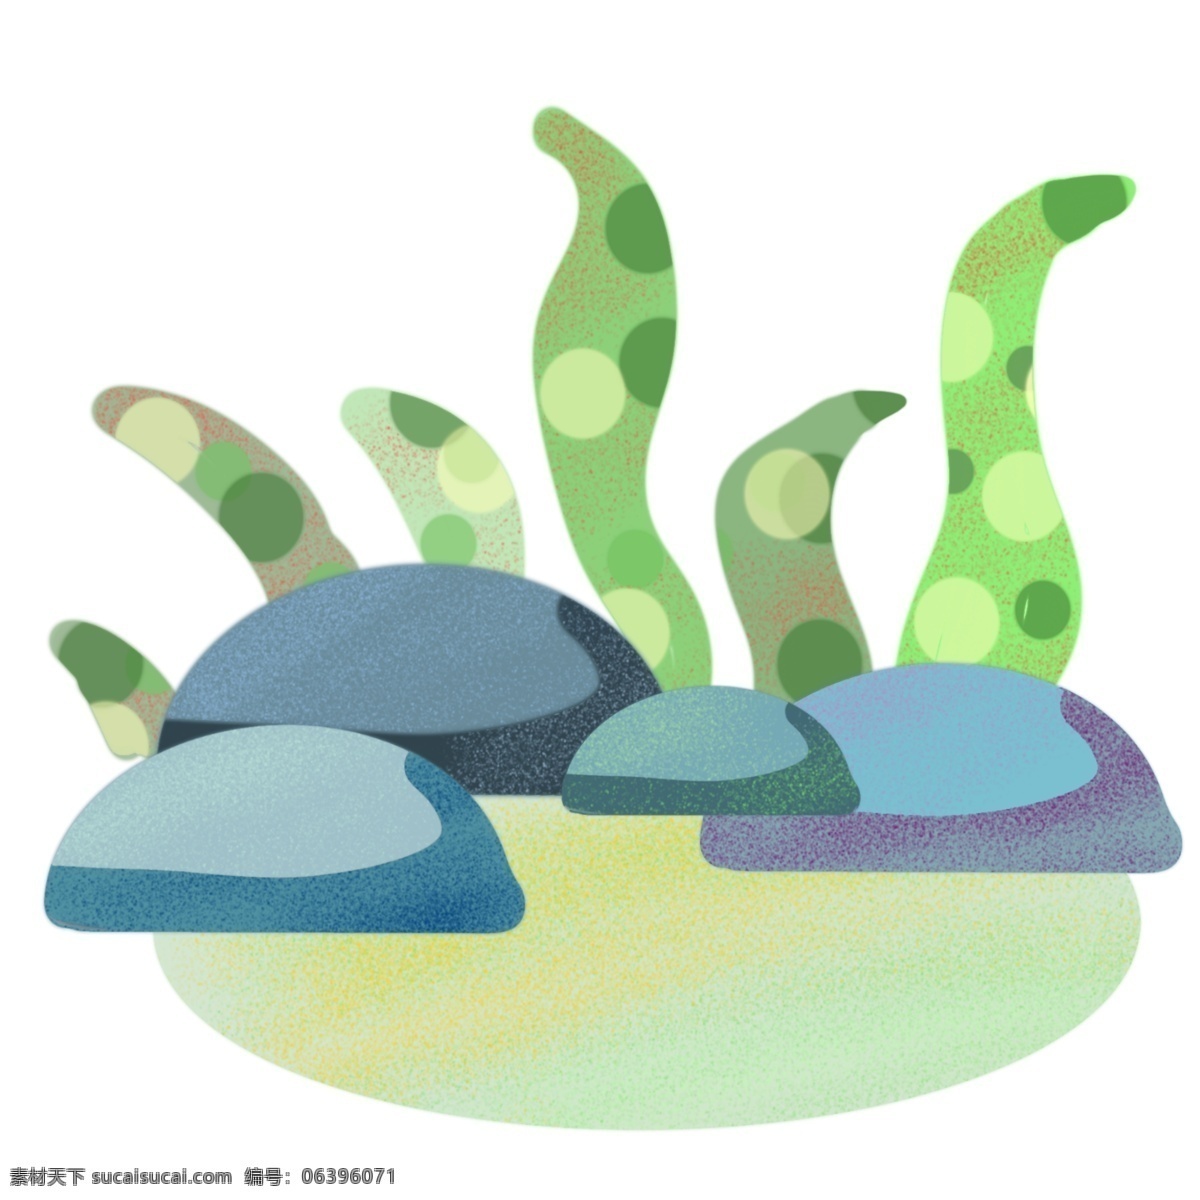 蓝色 石头 植物 插画 海底石头 插图 石子 蓝色石头 绿色植物 植物插画 鹅暖石 鹅 暖 石